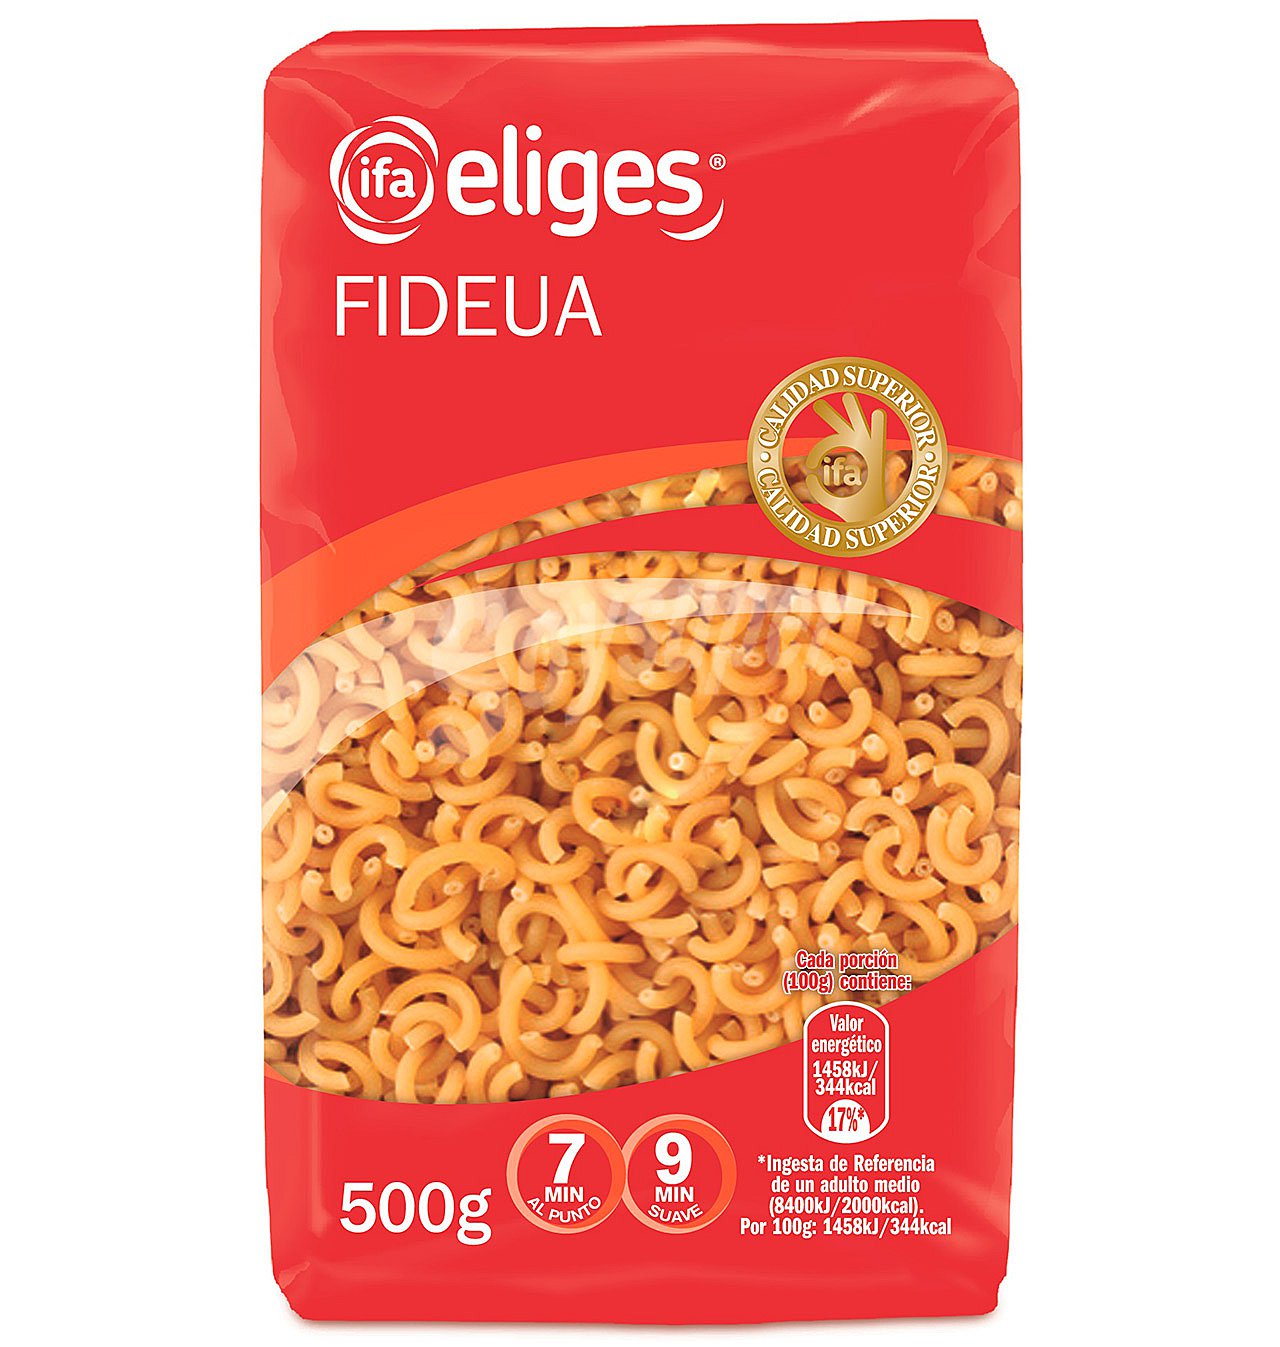 FIDEUA IFA ELIGES 500 g. AZ